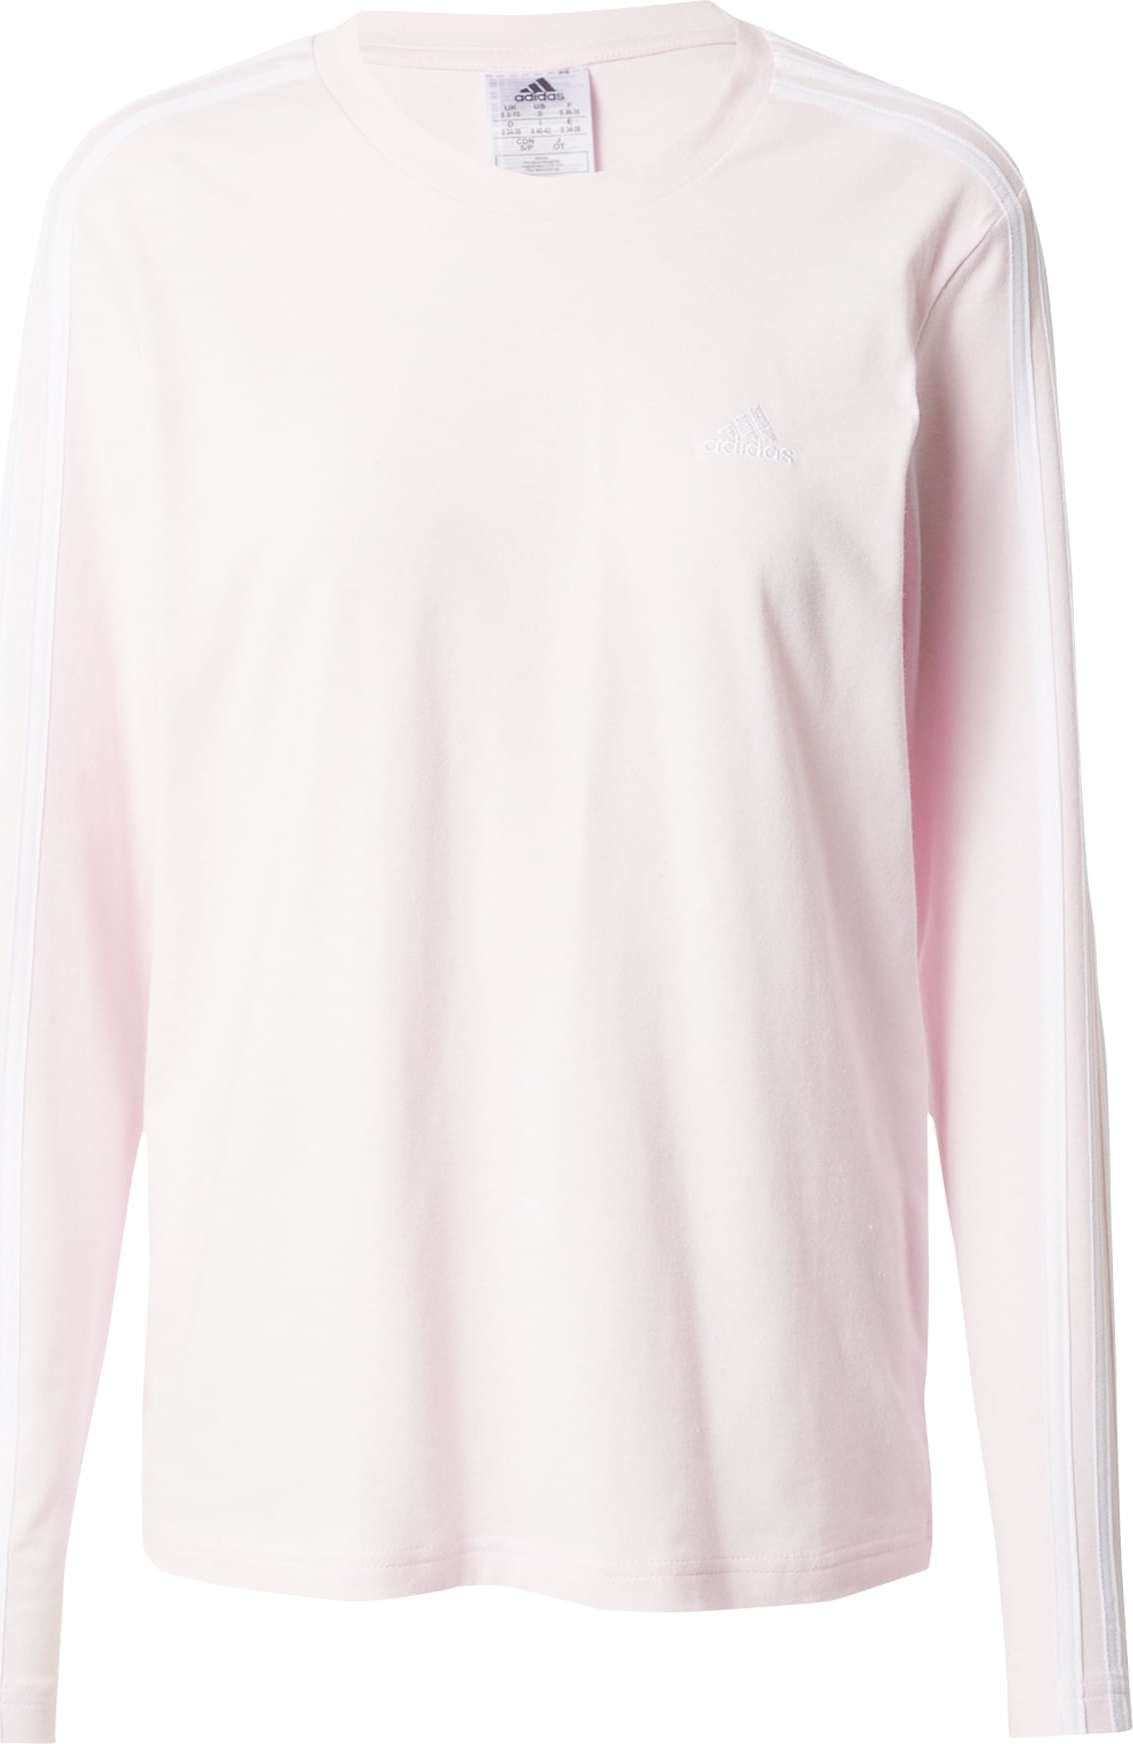 ADIDAS SPORTSWEAR Funkční tričko pastelově růžová / bílá